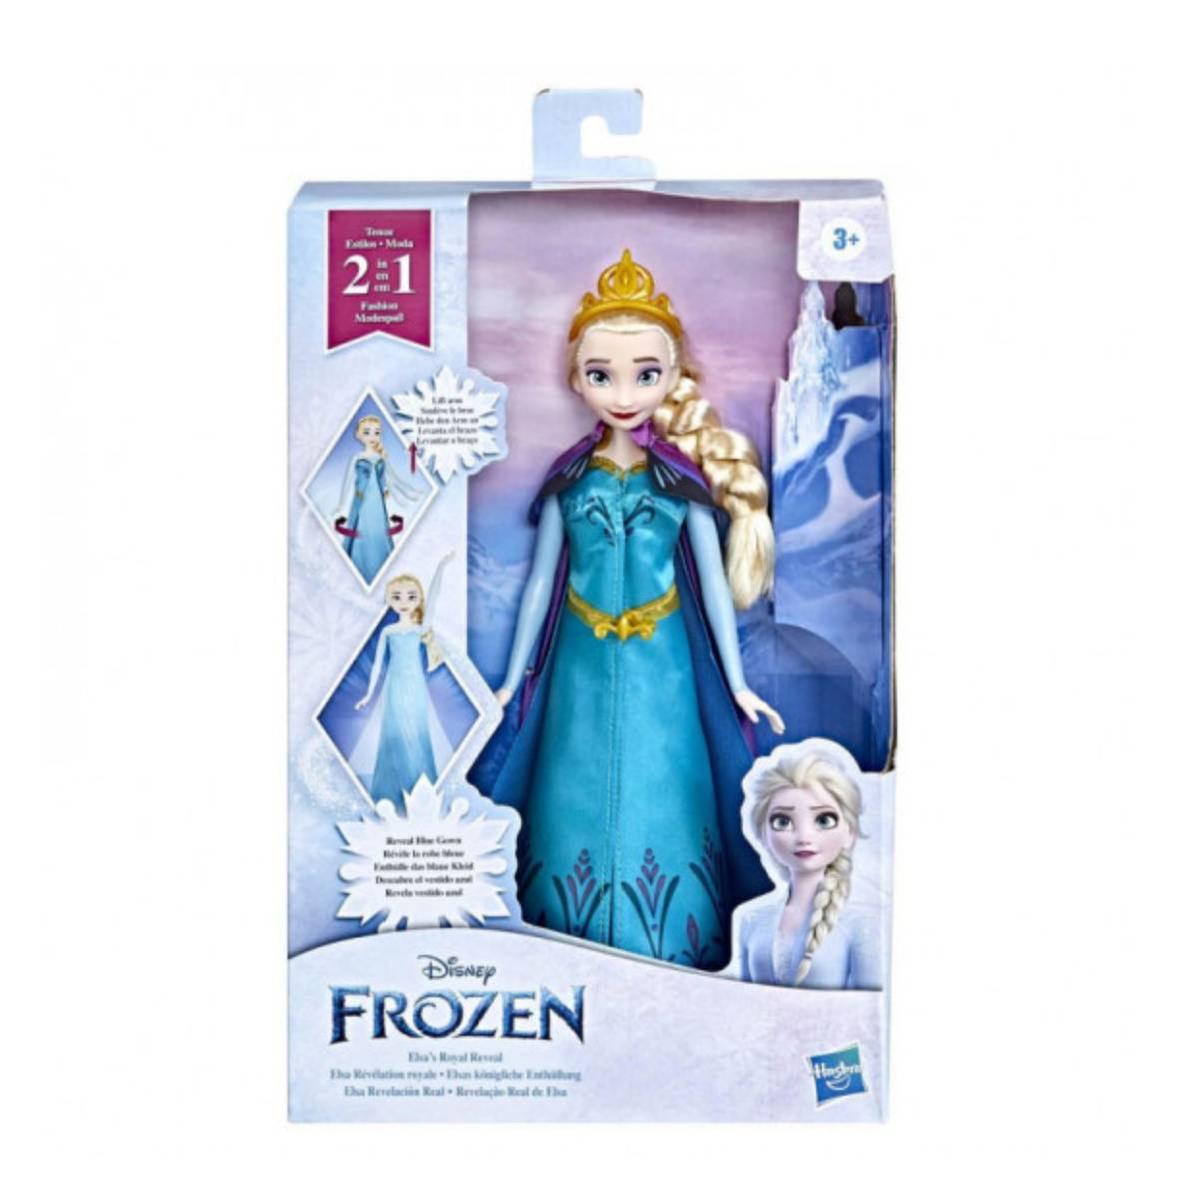 Frozen - Elsa revelación real | Dp Frozen | Toys"R"Us España